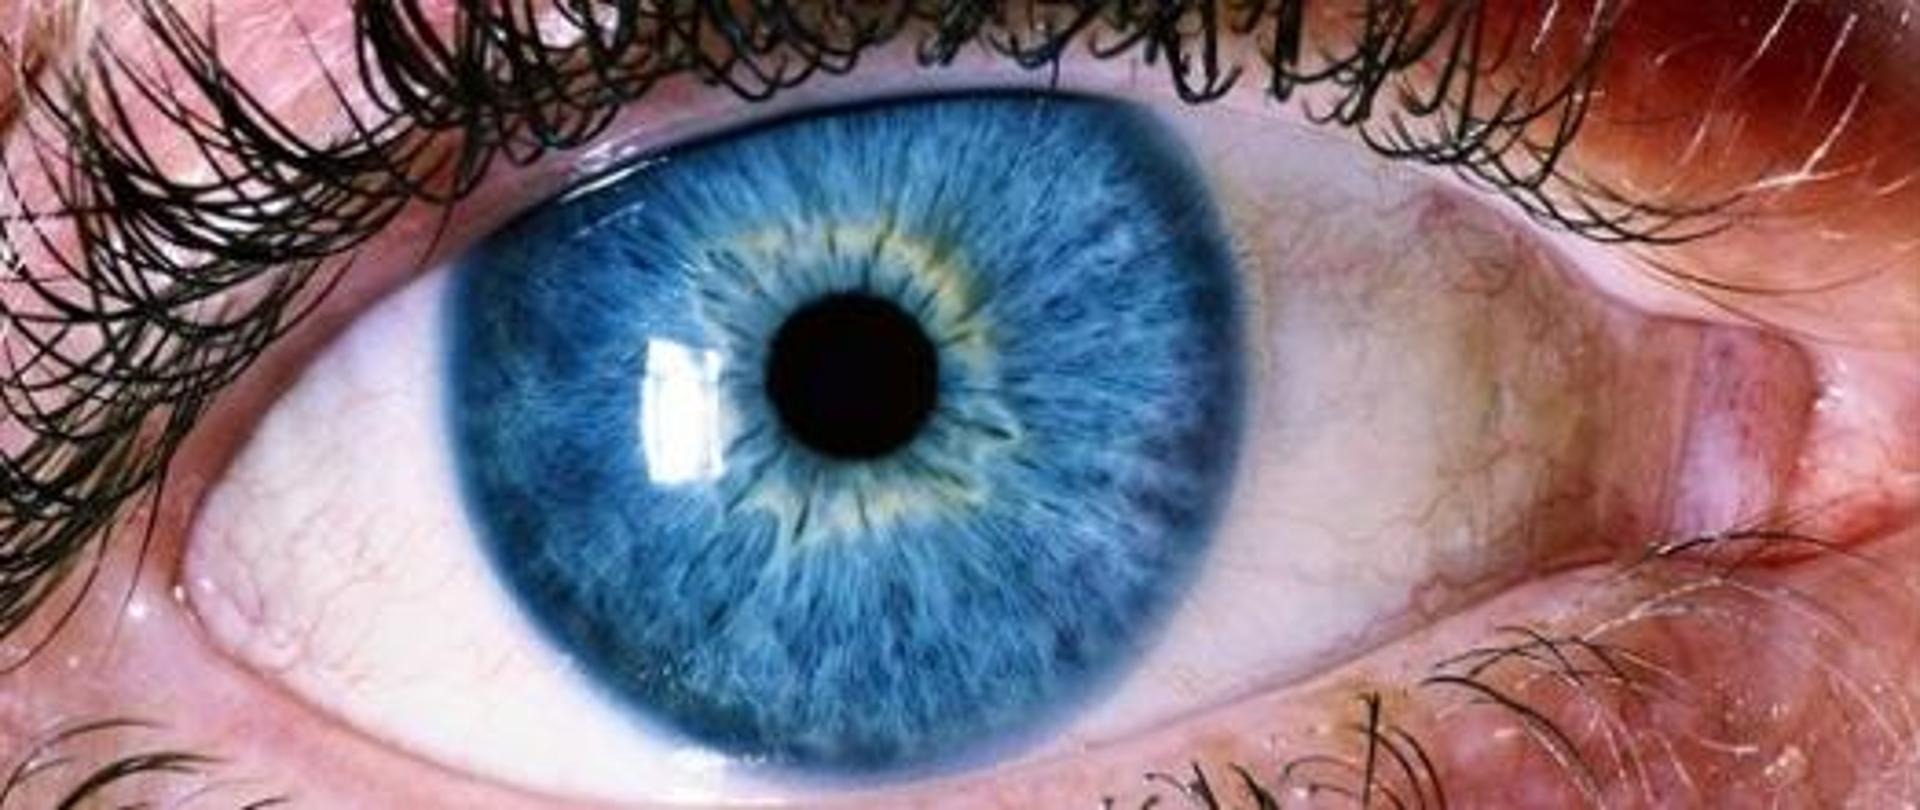 Światowy Dzień Wzroku. Na zdjęciu ukazano oko z niebieską tęczówką. 